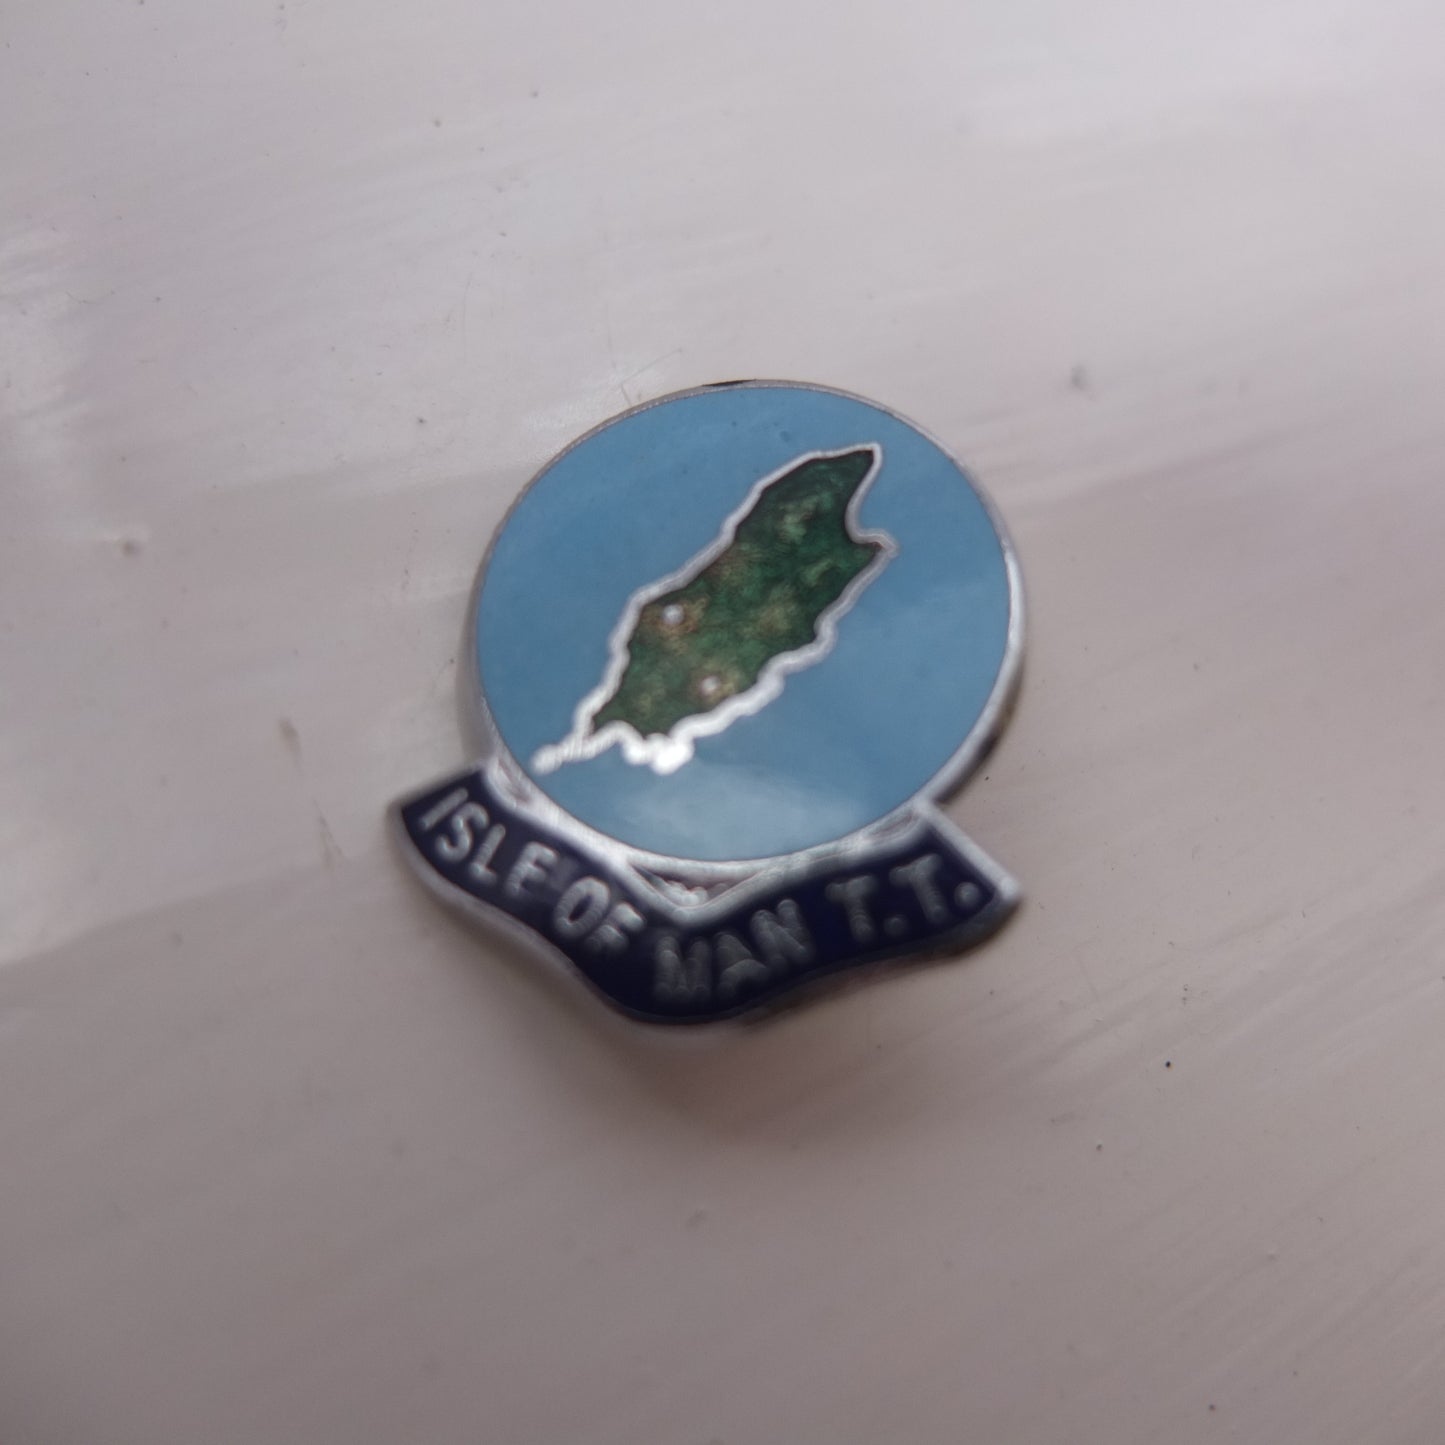 Pin badge - Isle of Man